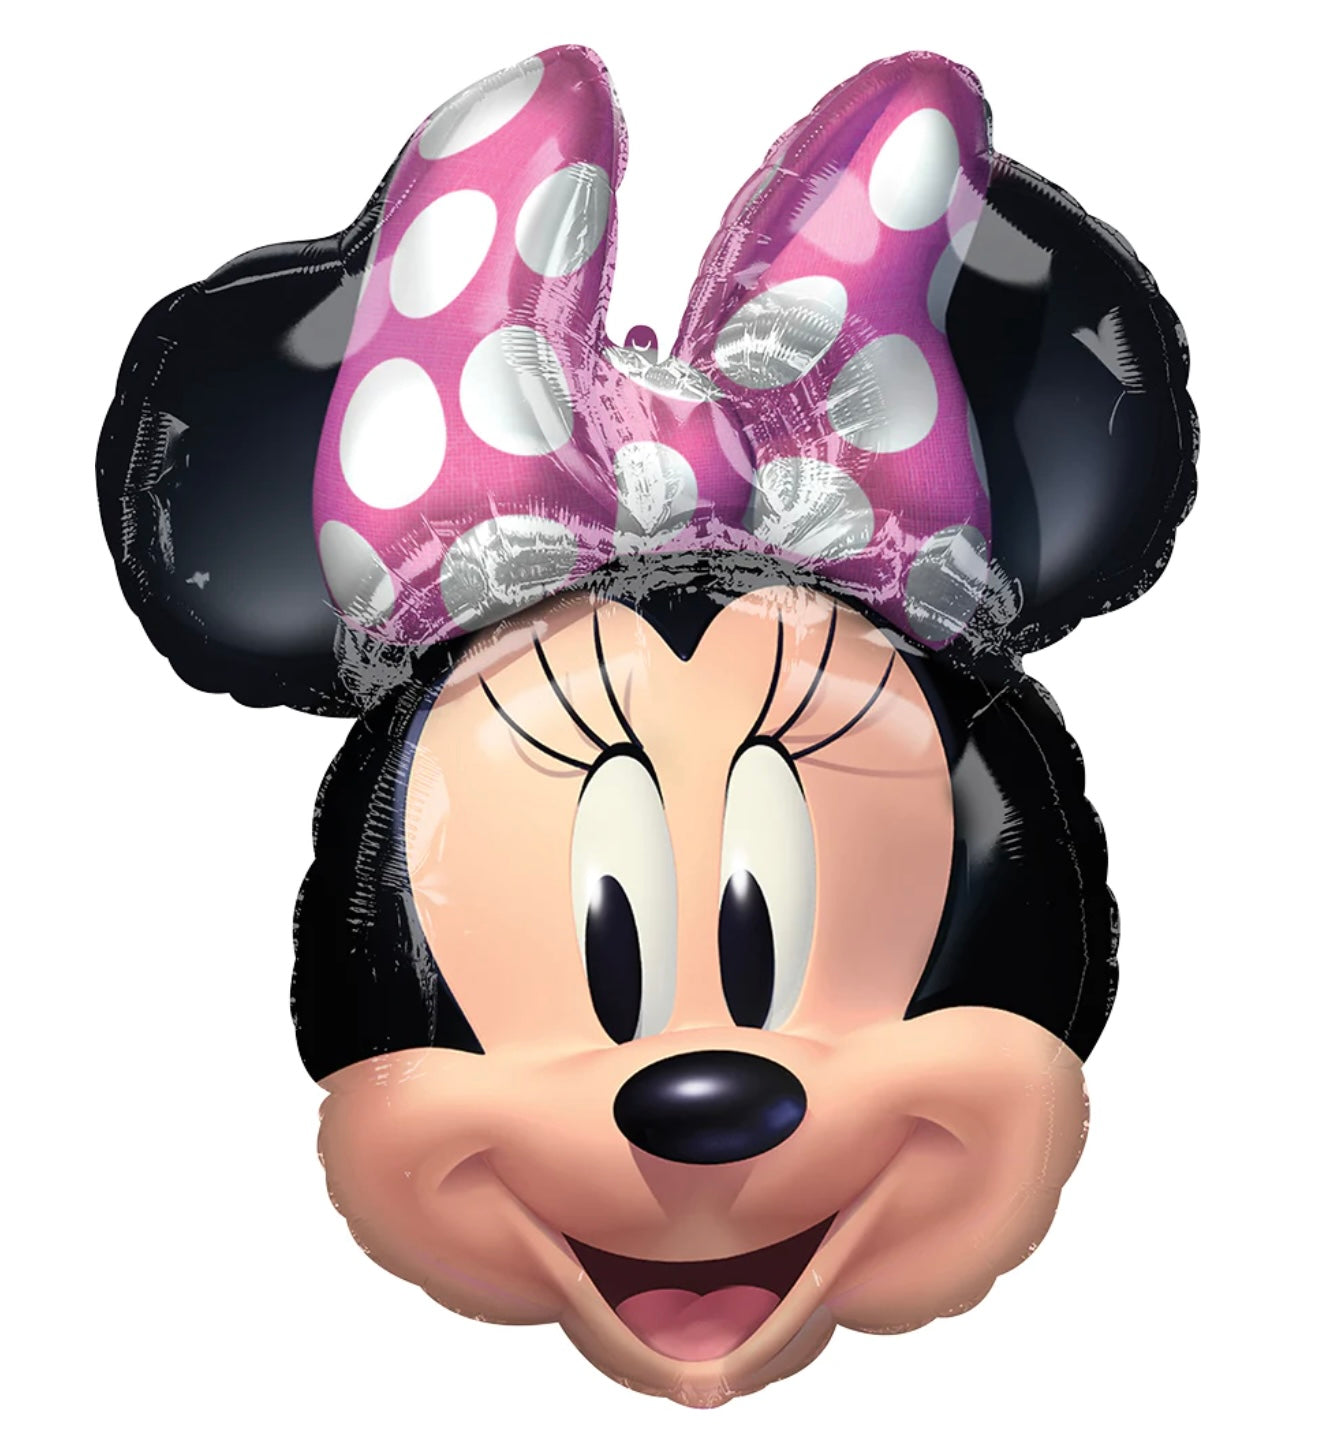 Minnie Mouse Head Balloon